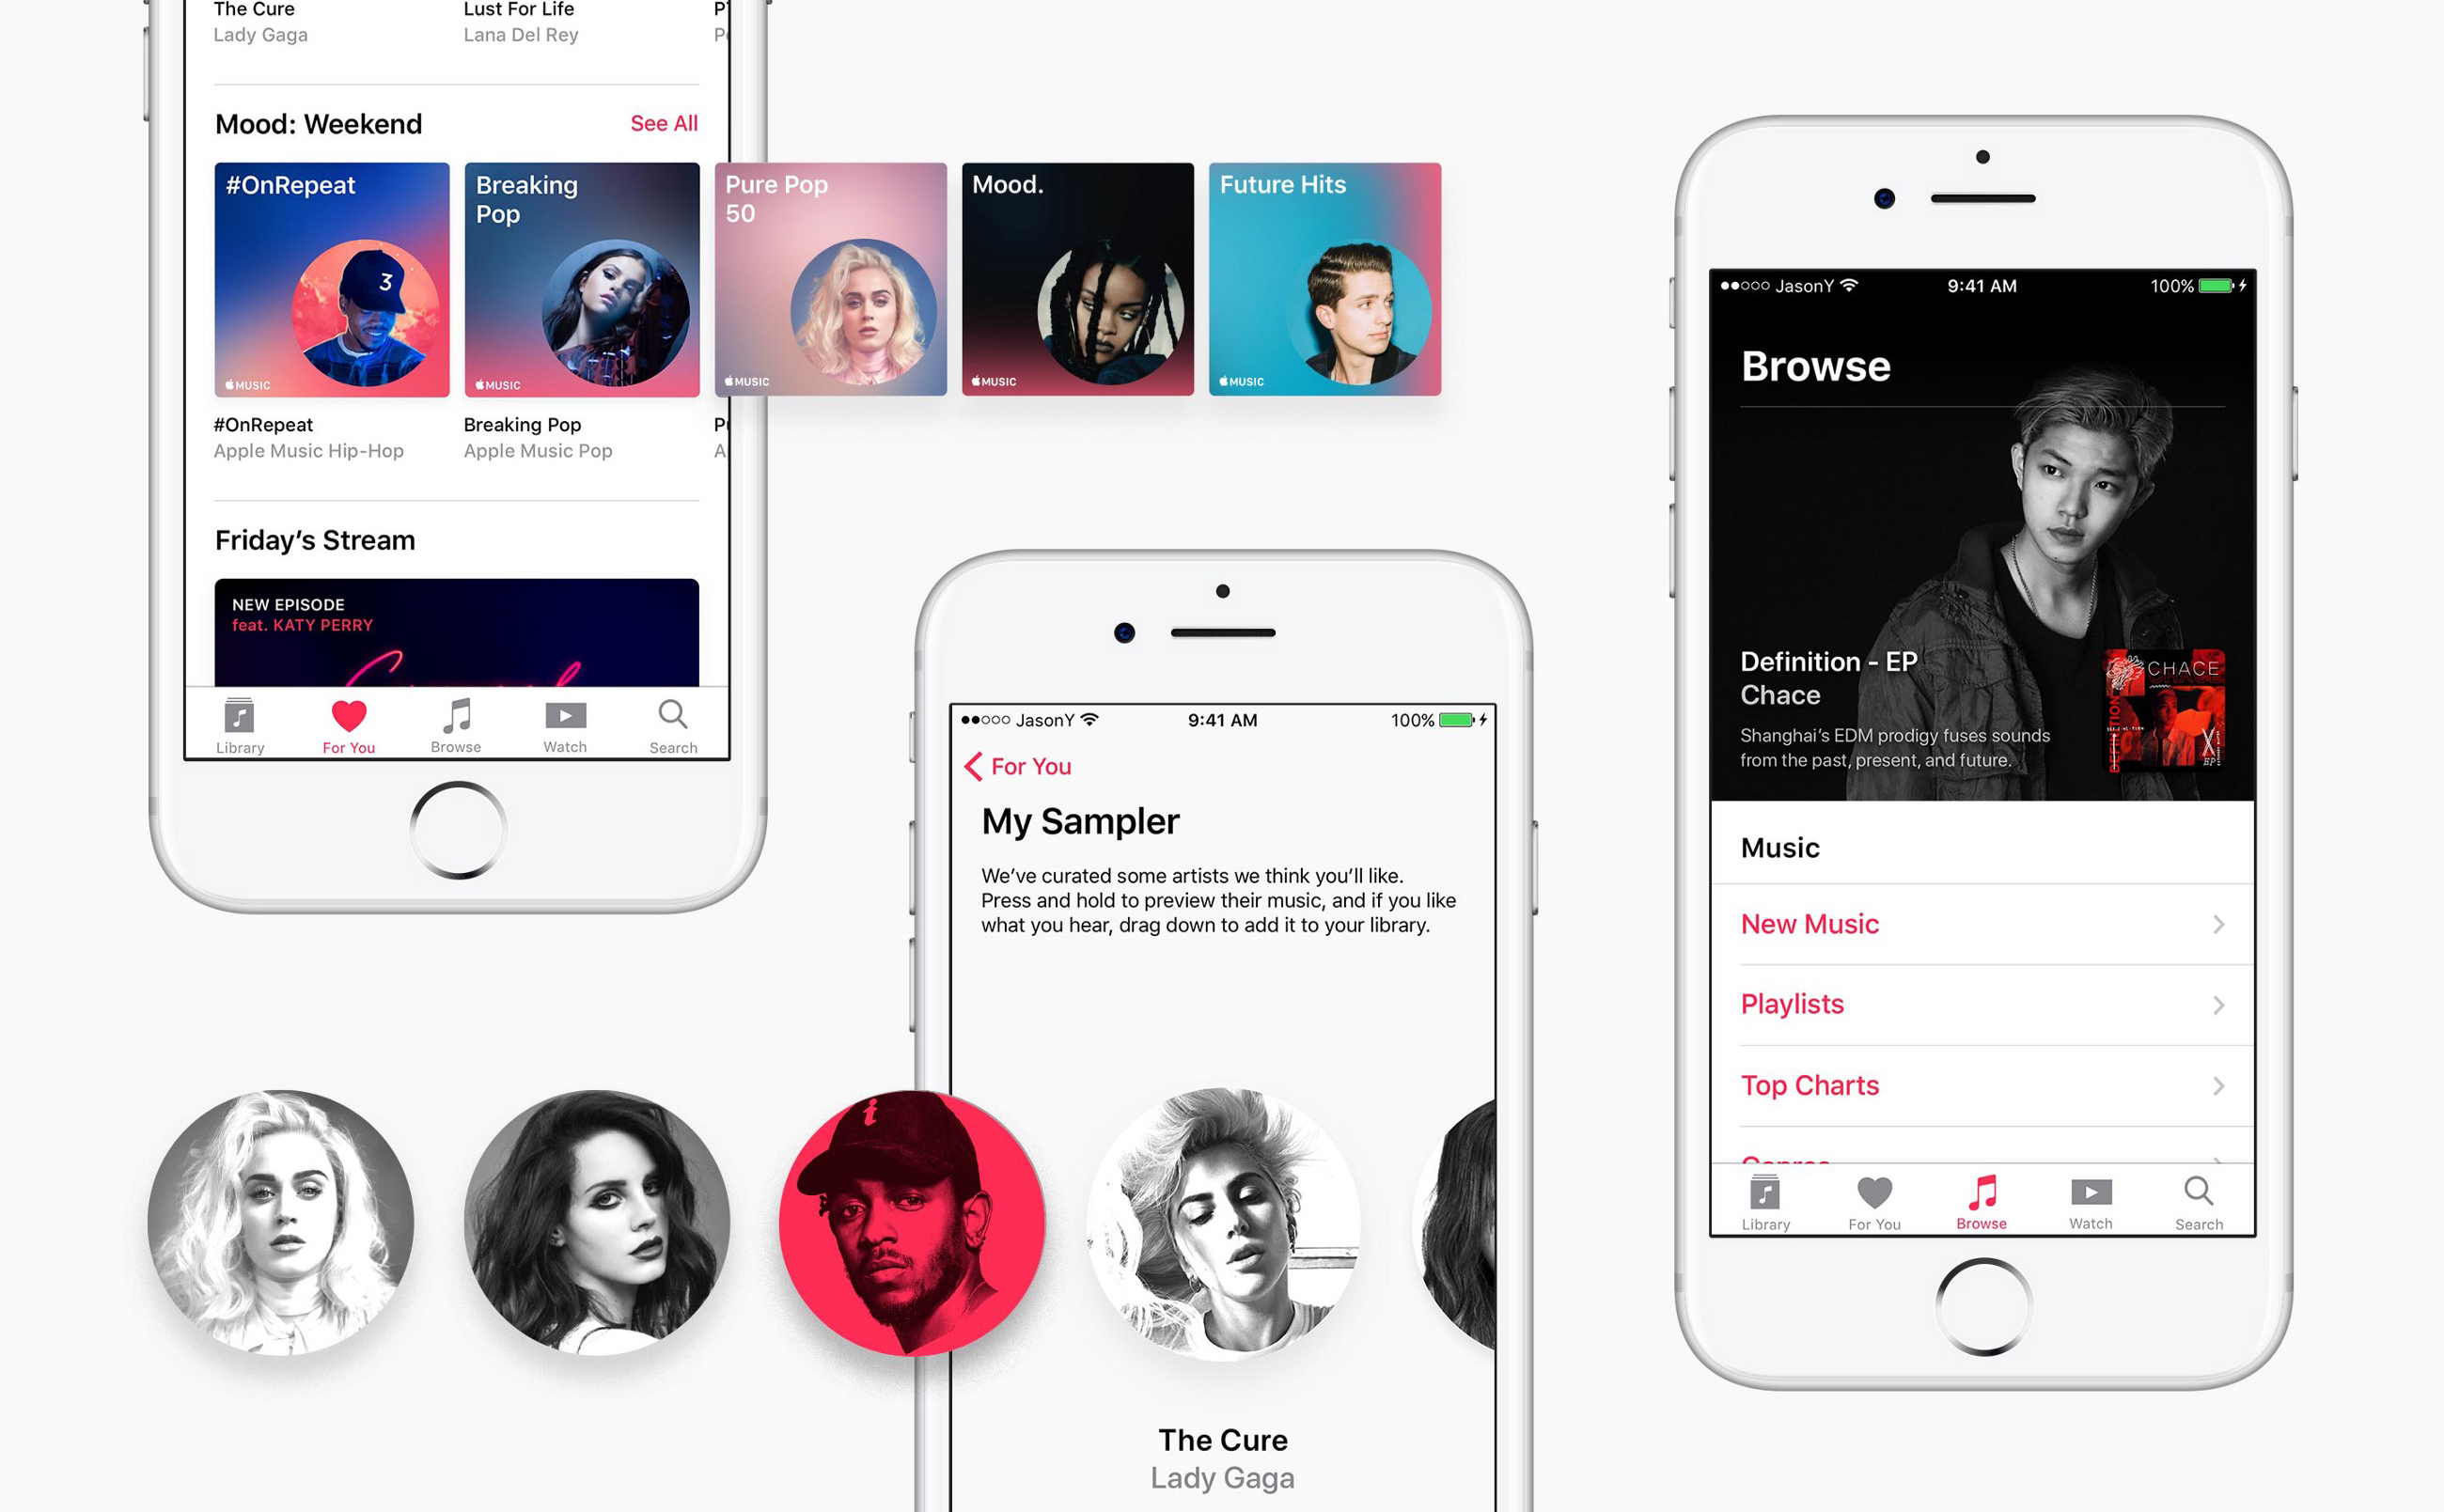 Anh em dùng Apple Music có thể mời bạn bè dùng thử miễn phí 1 tháng